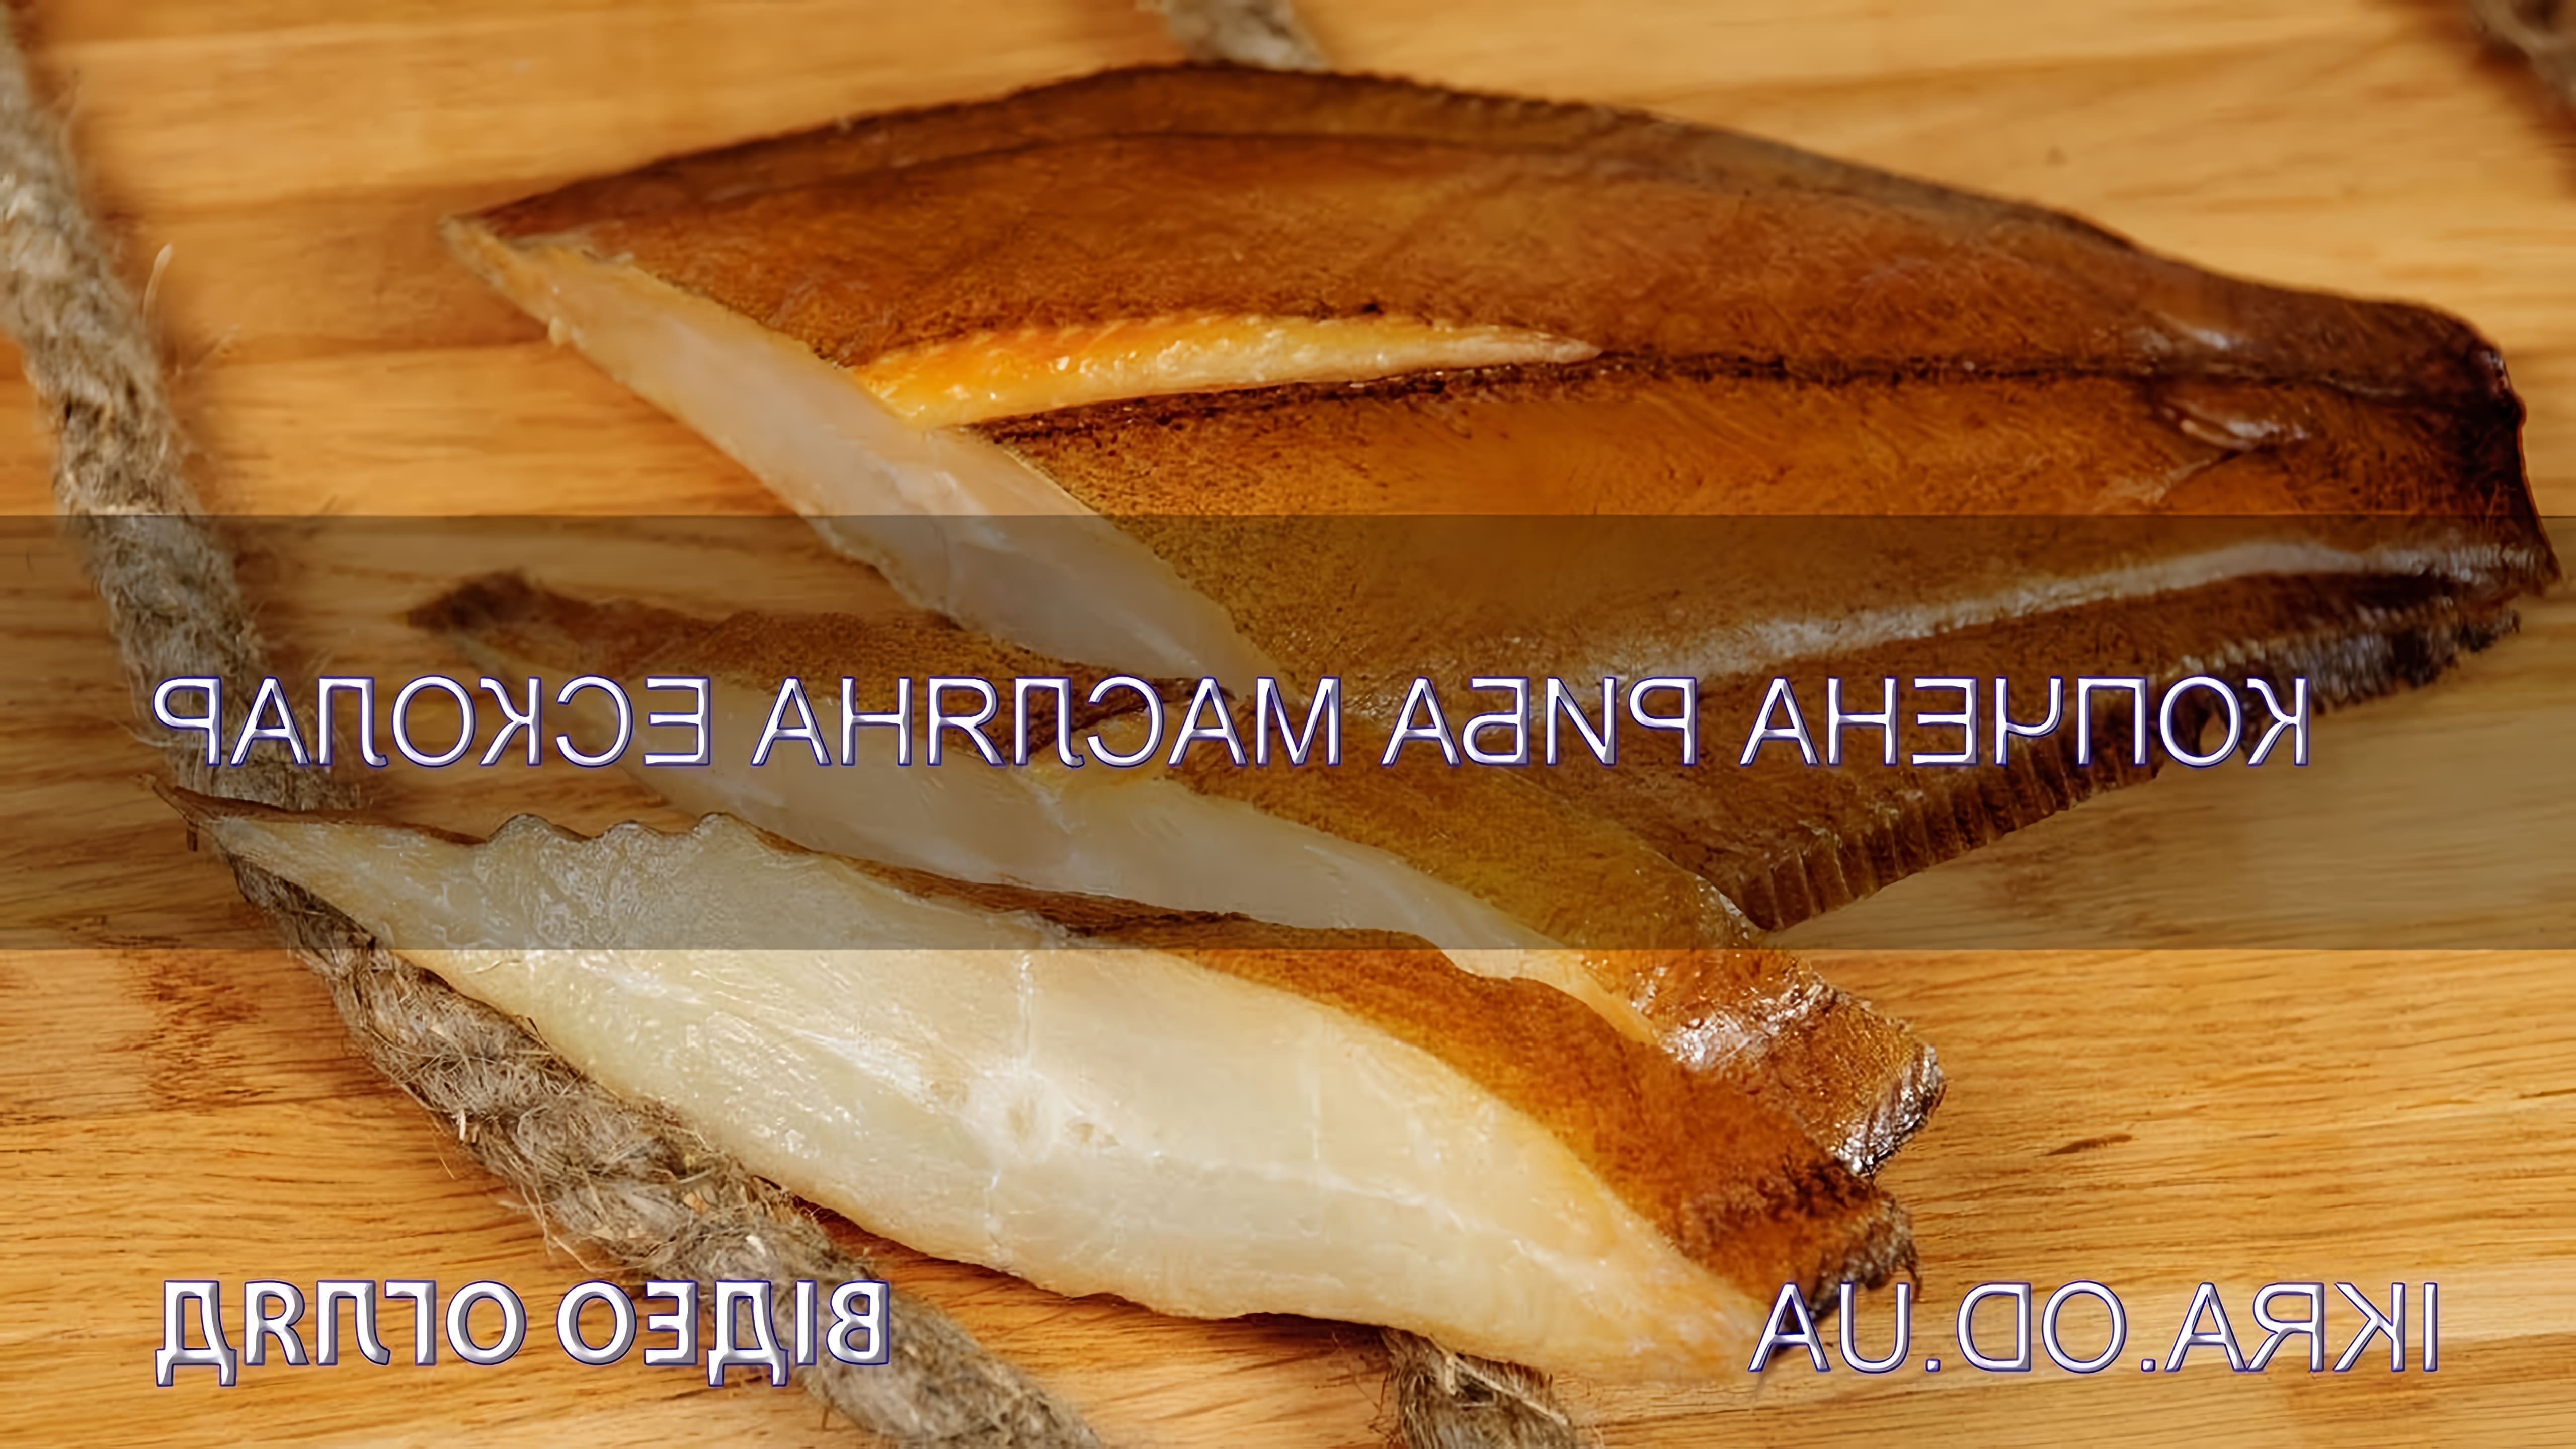 В данном видео-ролике будет представлен обзор масляной рыбы Эсколар, копченой